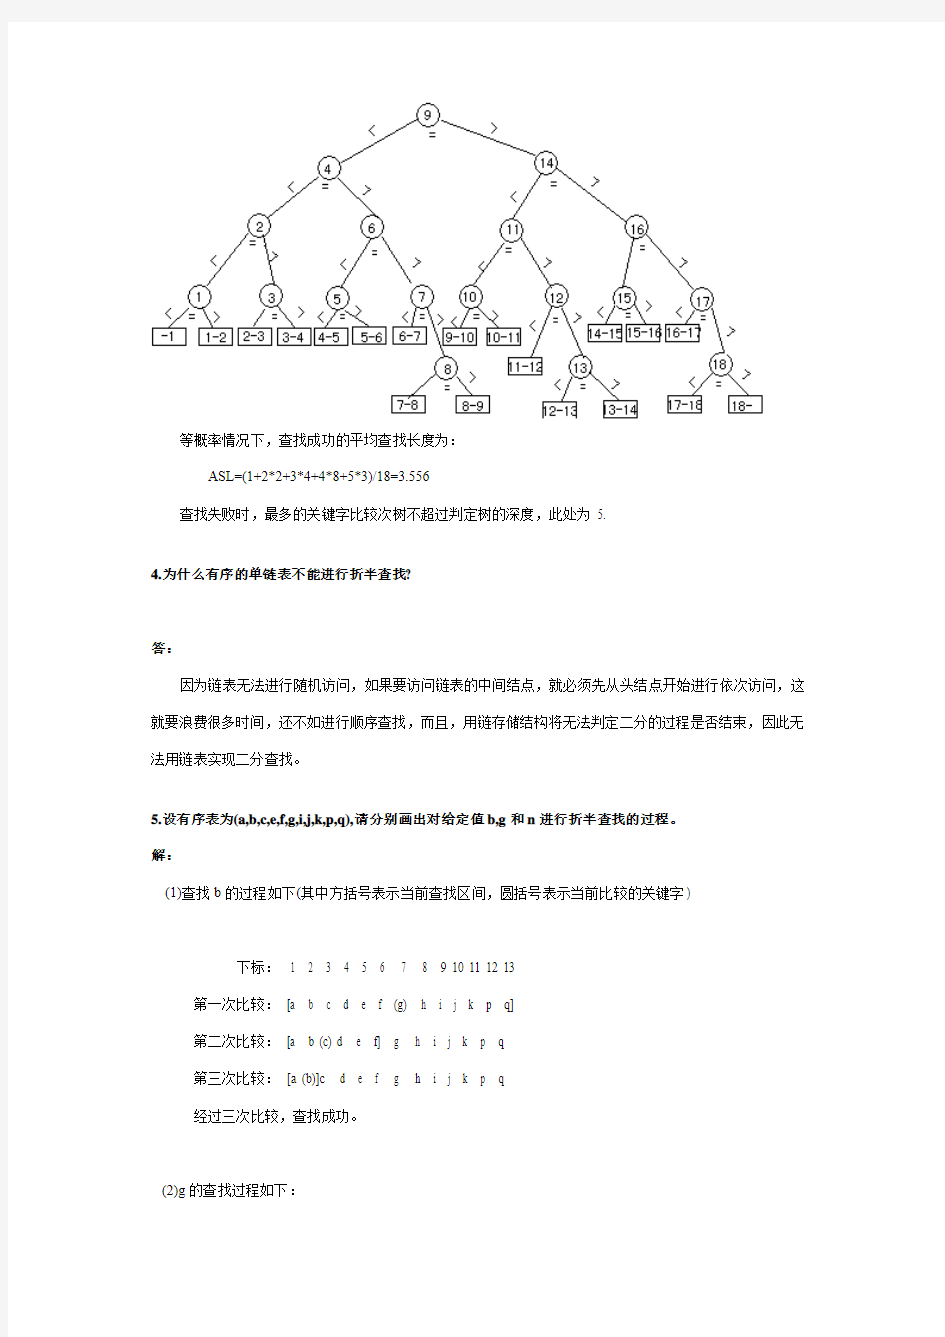 中南大学数据结构与算法第9章查找课后作业答案剖析